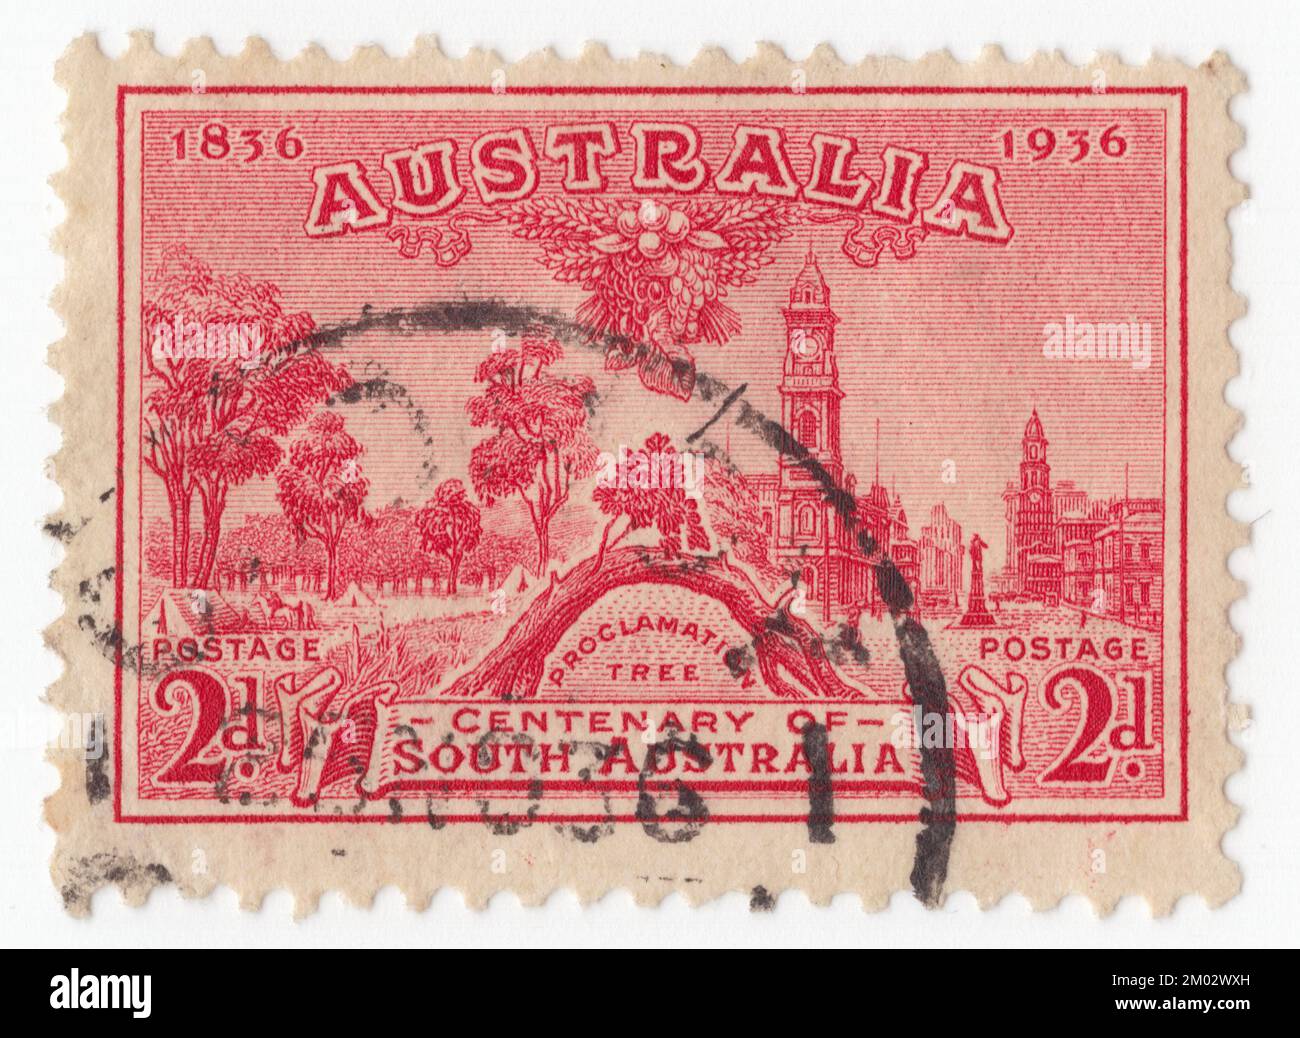 AUSTRALIEN – 1936: Ein roter Briefmarken mit 2 Pence, der den Proklamationsbaum und den Blick auf Adelaide darstellt. 100 Jahre Südaustralien. Der Old Gum Tree (auch bekannt als Proklamationsbaum) ist eine historische Stätte in Glenelg North, Südaustralien. Am 28. Dezember 1836 verkündete der britische Gouverneur John Hindmarsh in der Nähe dieses Baumes die Gründung der Regierung der Kolonie Südaustraliens. Am Proklamationstag findet jedes Jahr an diesem Ort eine Zeremonie statt, bei der der aktuelle Gouverneur Hindmarshs ursprüngliche Rede vorliest. Der Baum selbst, wahrscheinlich ein roter Kaugummi, war 1907 gestorben Stockfoto